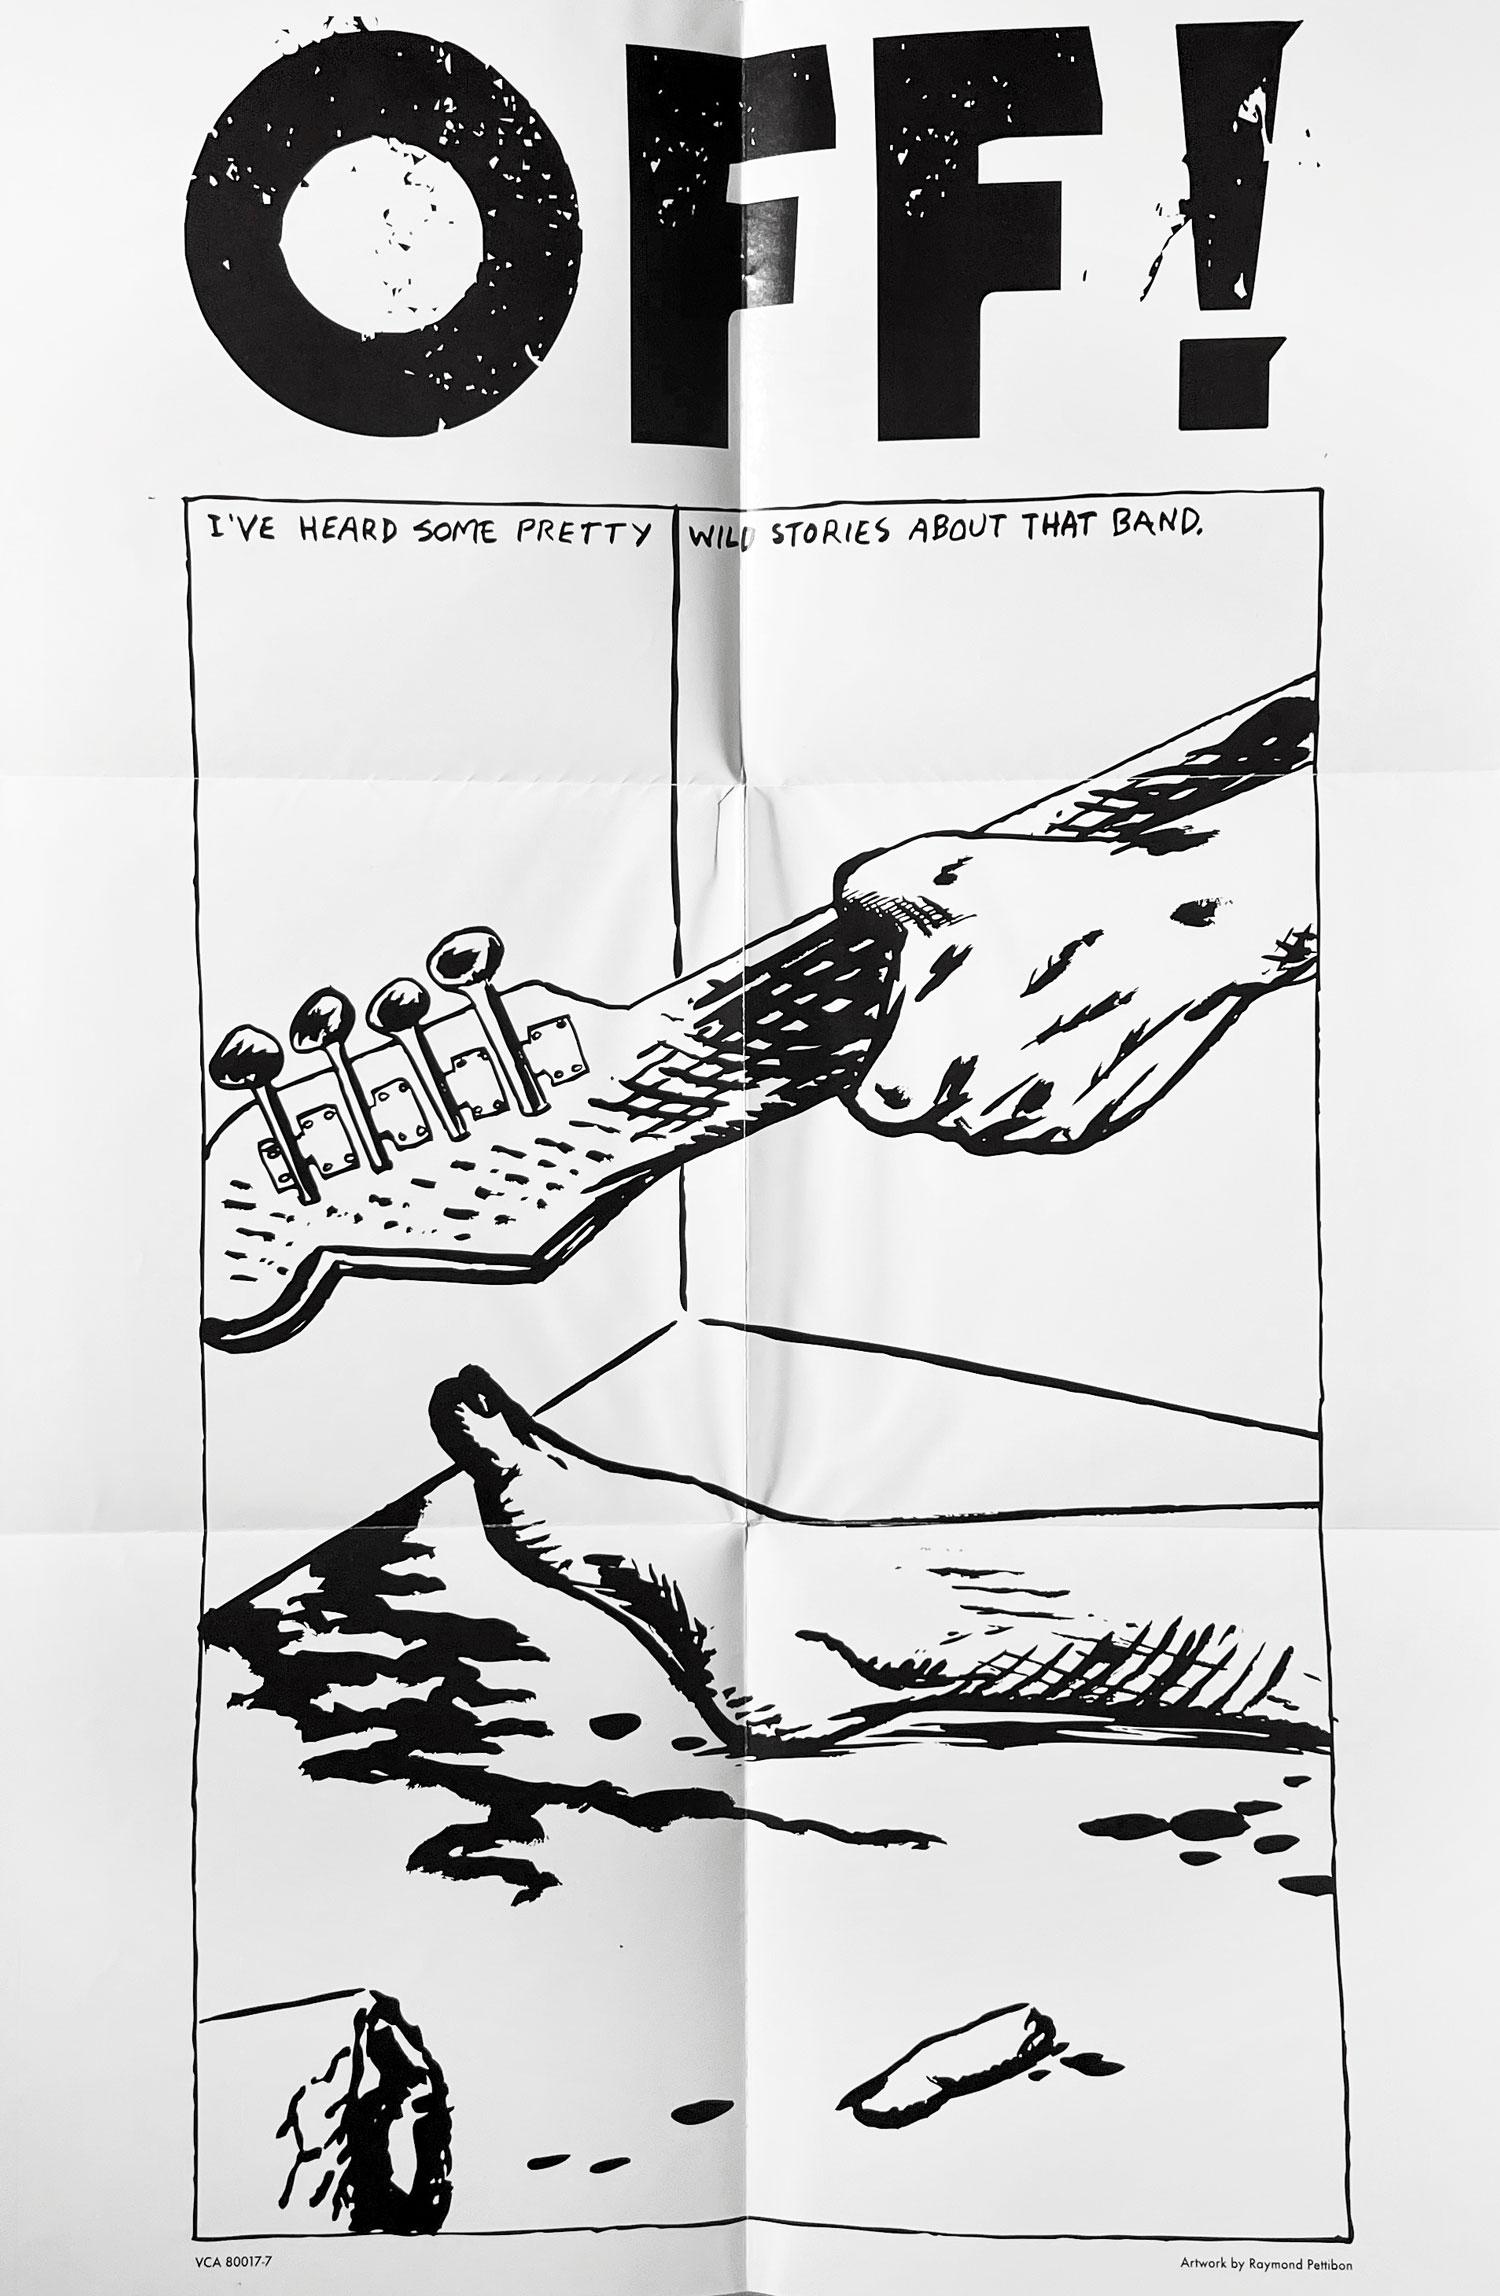 Raymond Pettibon Off ! 
Affiche du groupe Off ! illustrée par Raymond Pettibon pour le célèbre groupe punk de 2009 cofondé par Keith Morris, ami de Pettibon et membre de Black Flag.

Médium et dimensions : lithographie offset ; 11x17 pouces. Vers